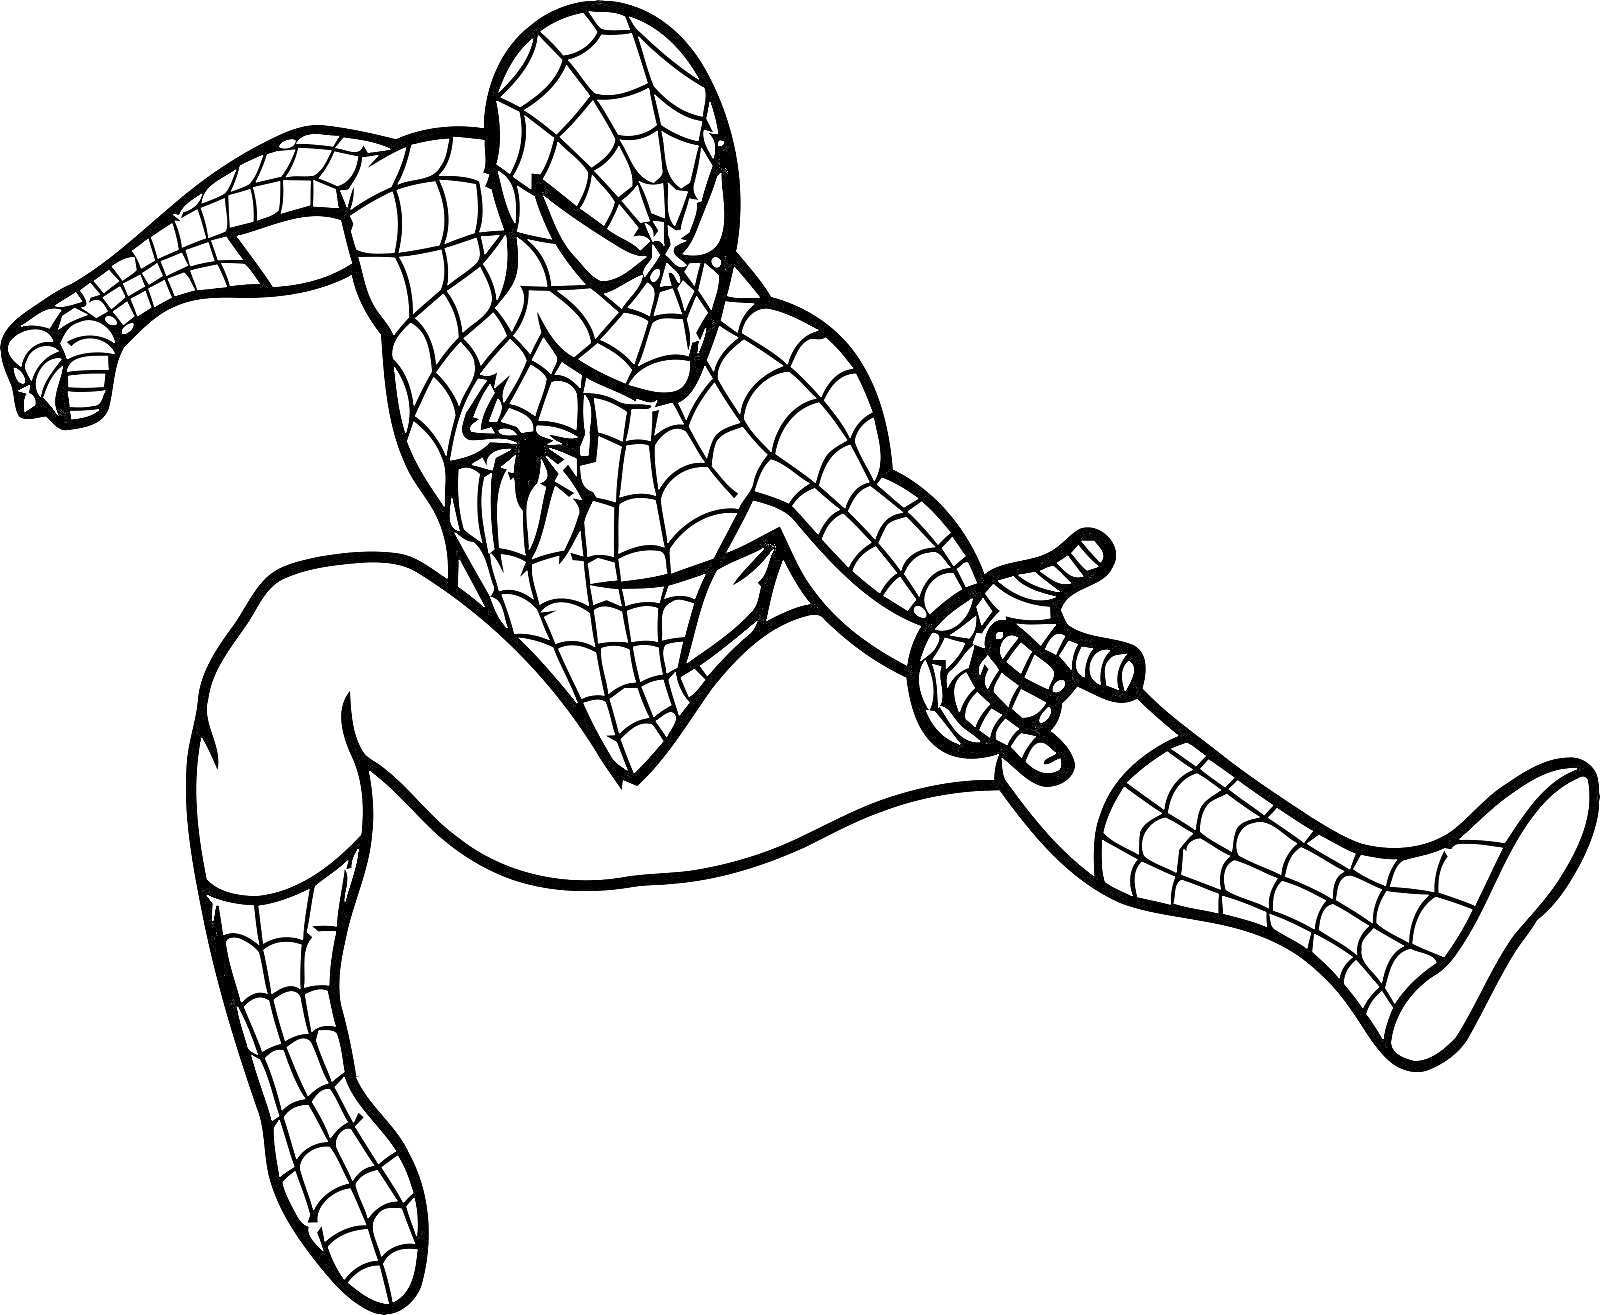 Раскраска Человек Паук в прыжке с вытянутой правой рукой, в классическом костюме.